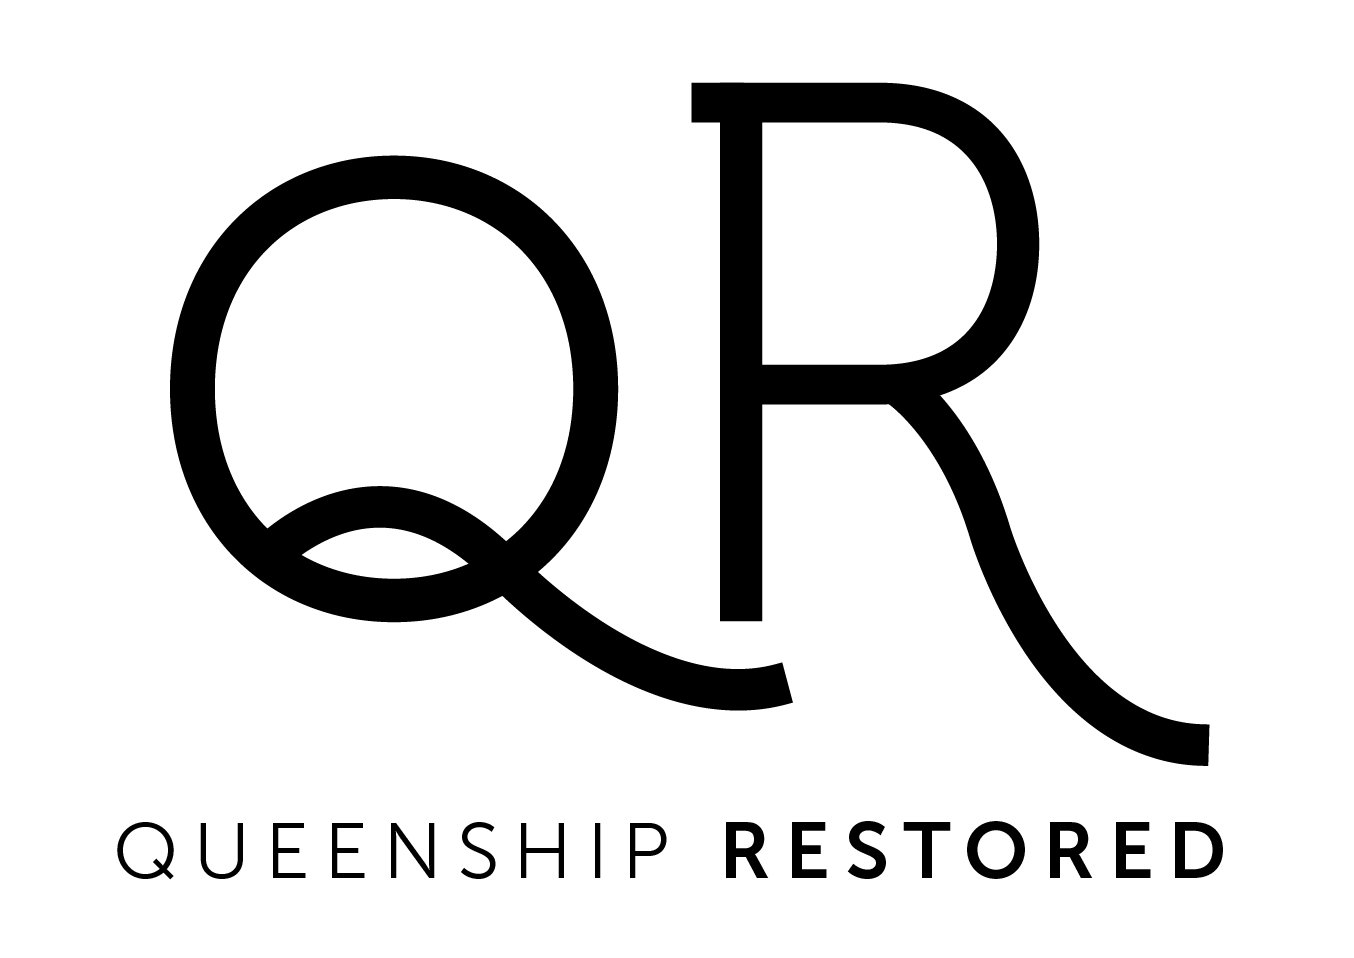 Queenship Restored 